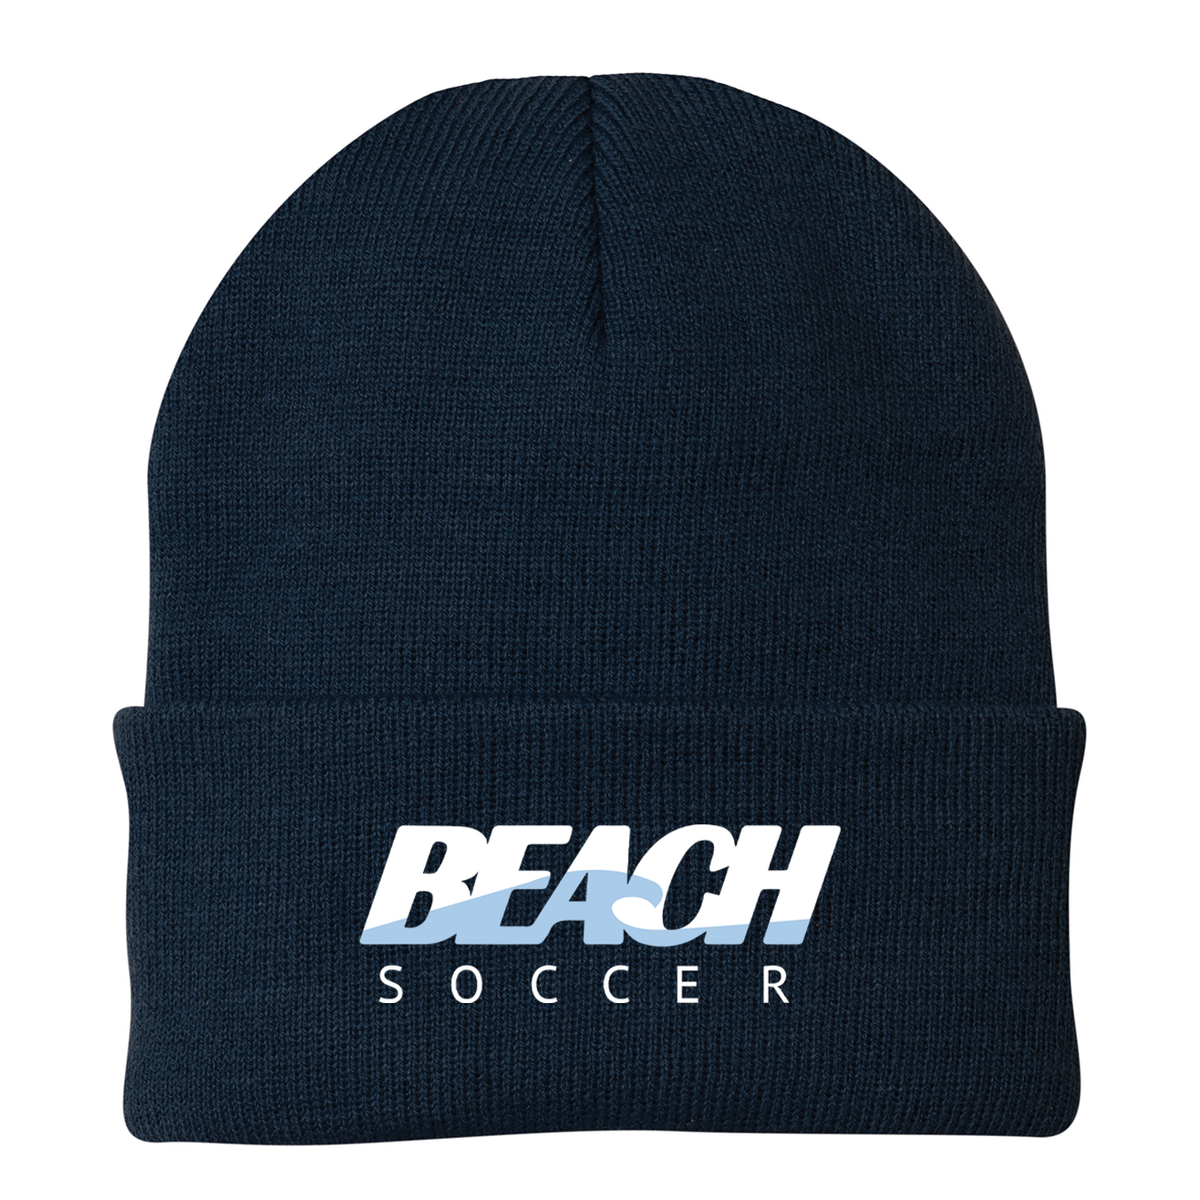 Long Beach Soccer Knit Beanie